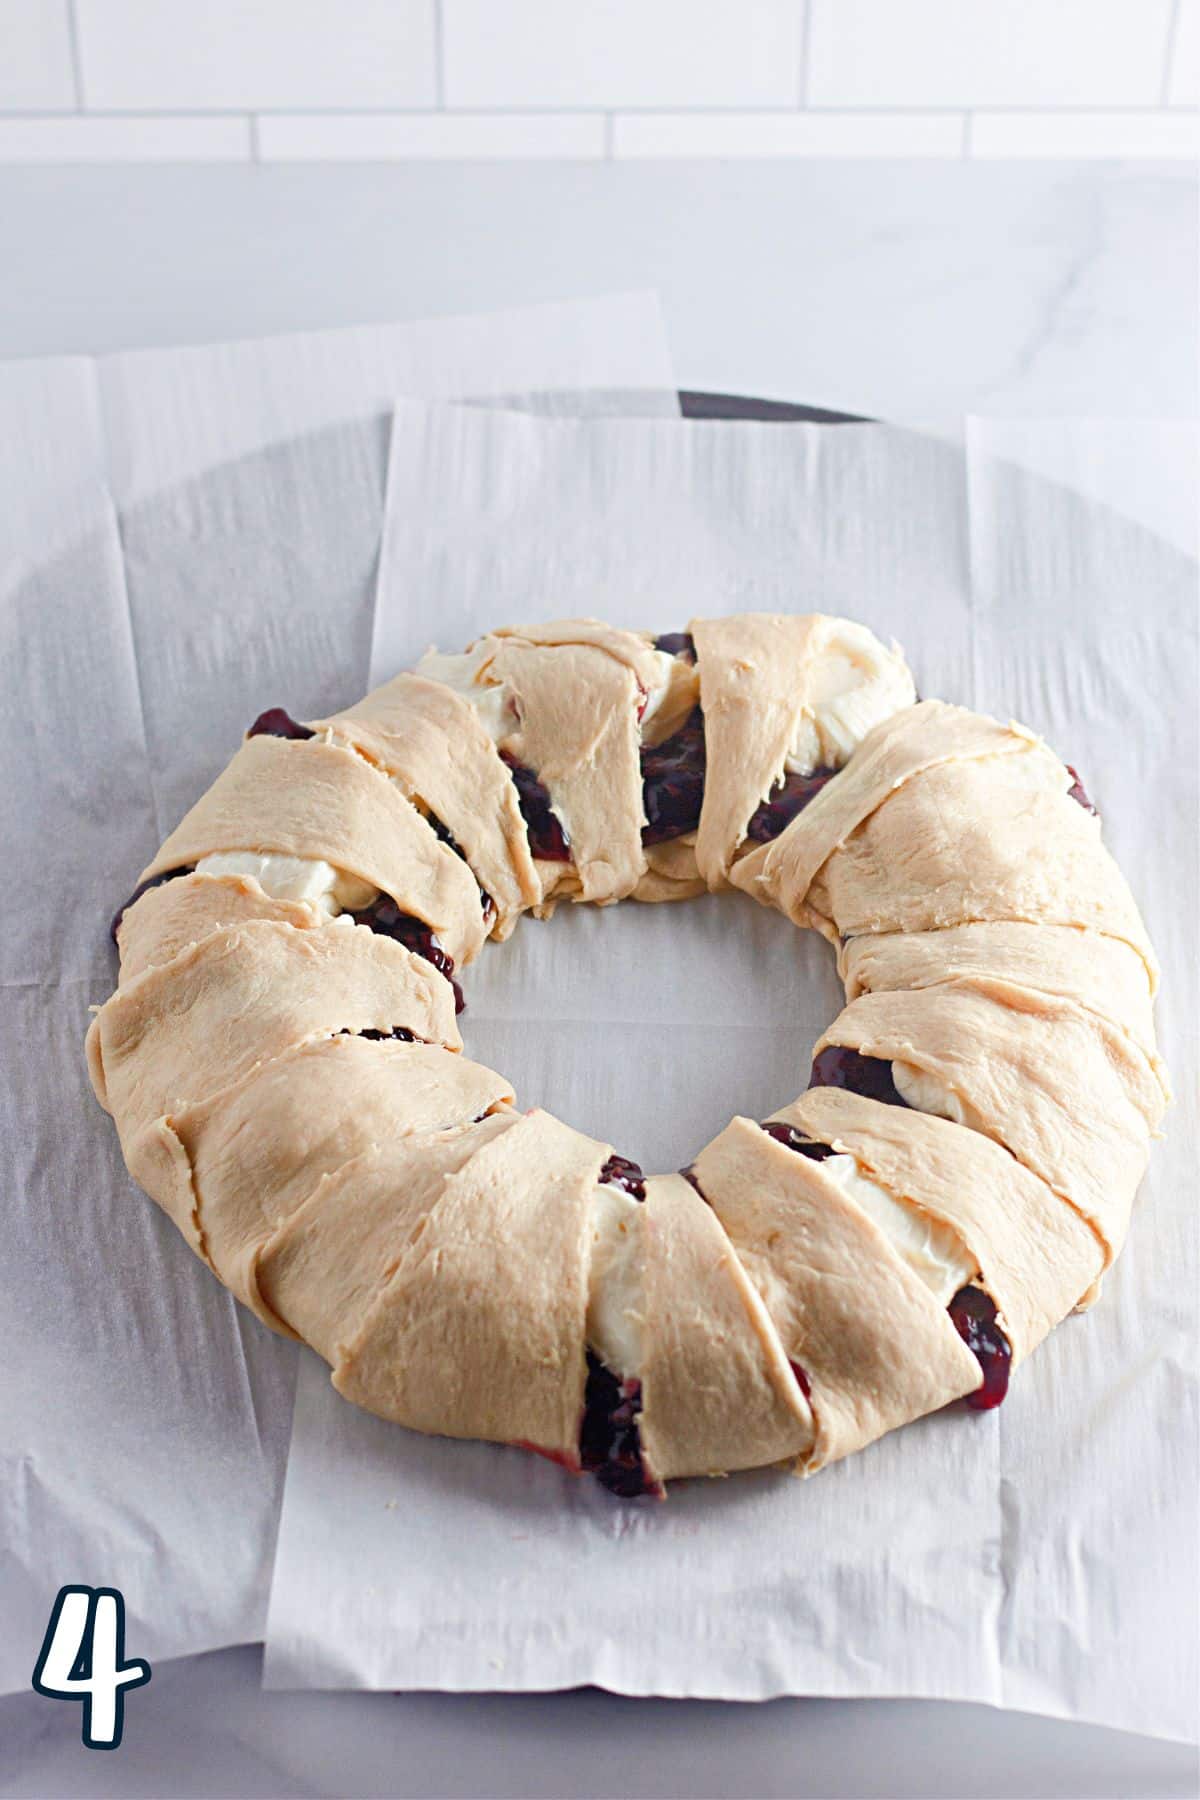 A berry wreath on a baking sheet.